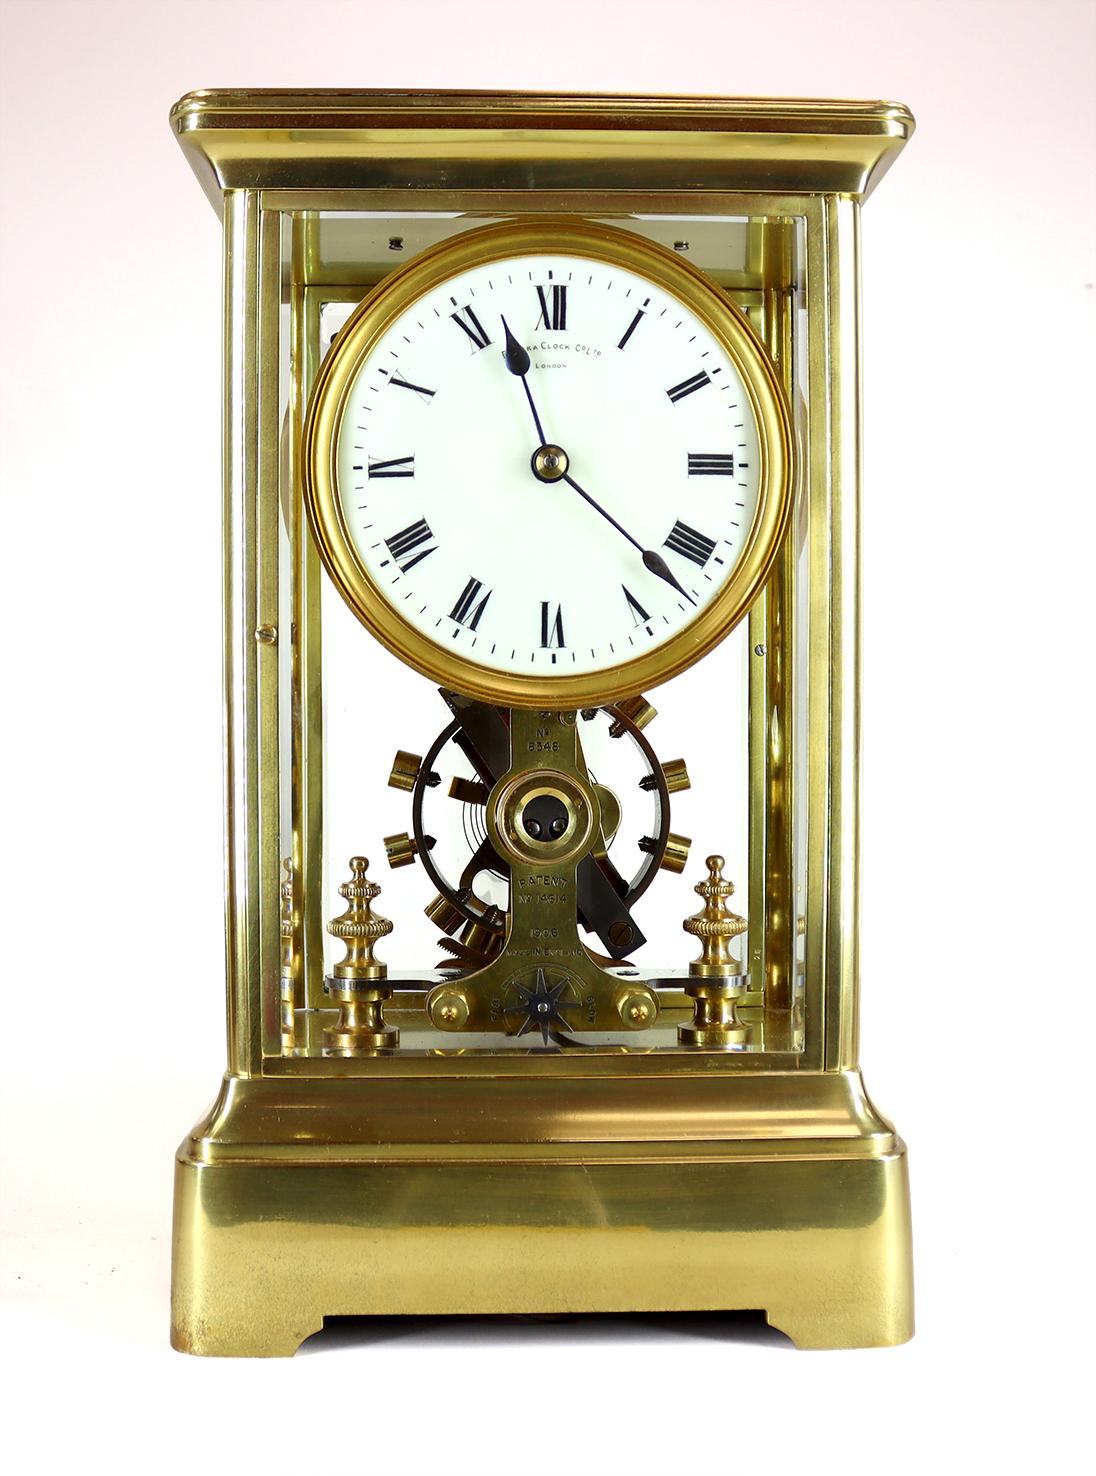 Un superbe exemple d'horloge Eureka fabriquée vers 1912.

Le mouvement électromagnétique est régulé par un grand balancier bimétallique à oscillation lente. Avec la pile adéquate, ces horloges fonctionneront pendant toute la durée de vie de la pile.